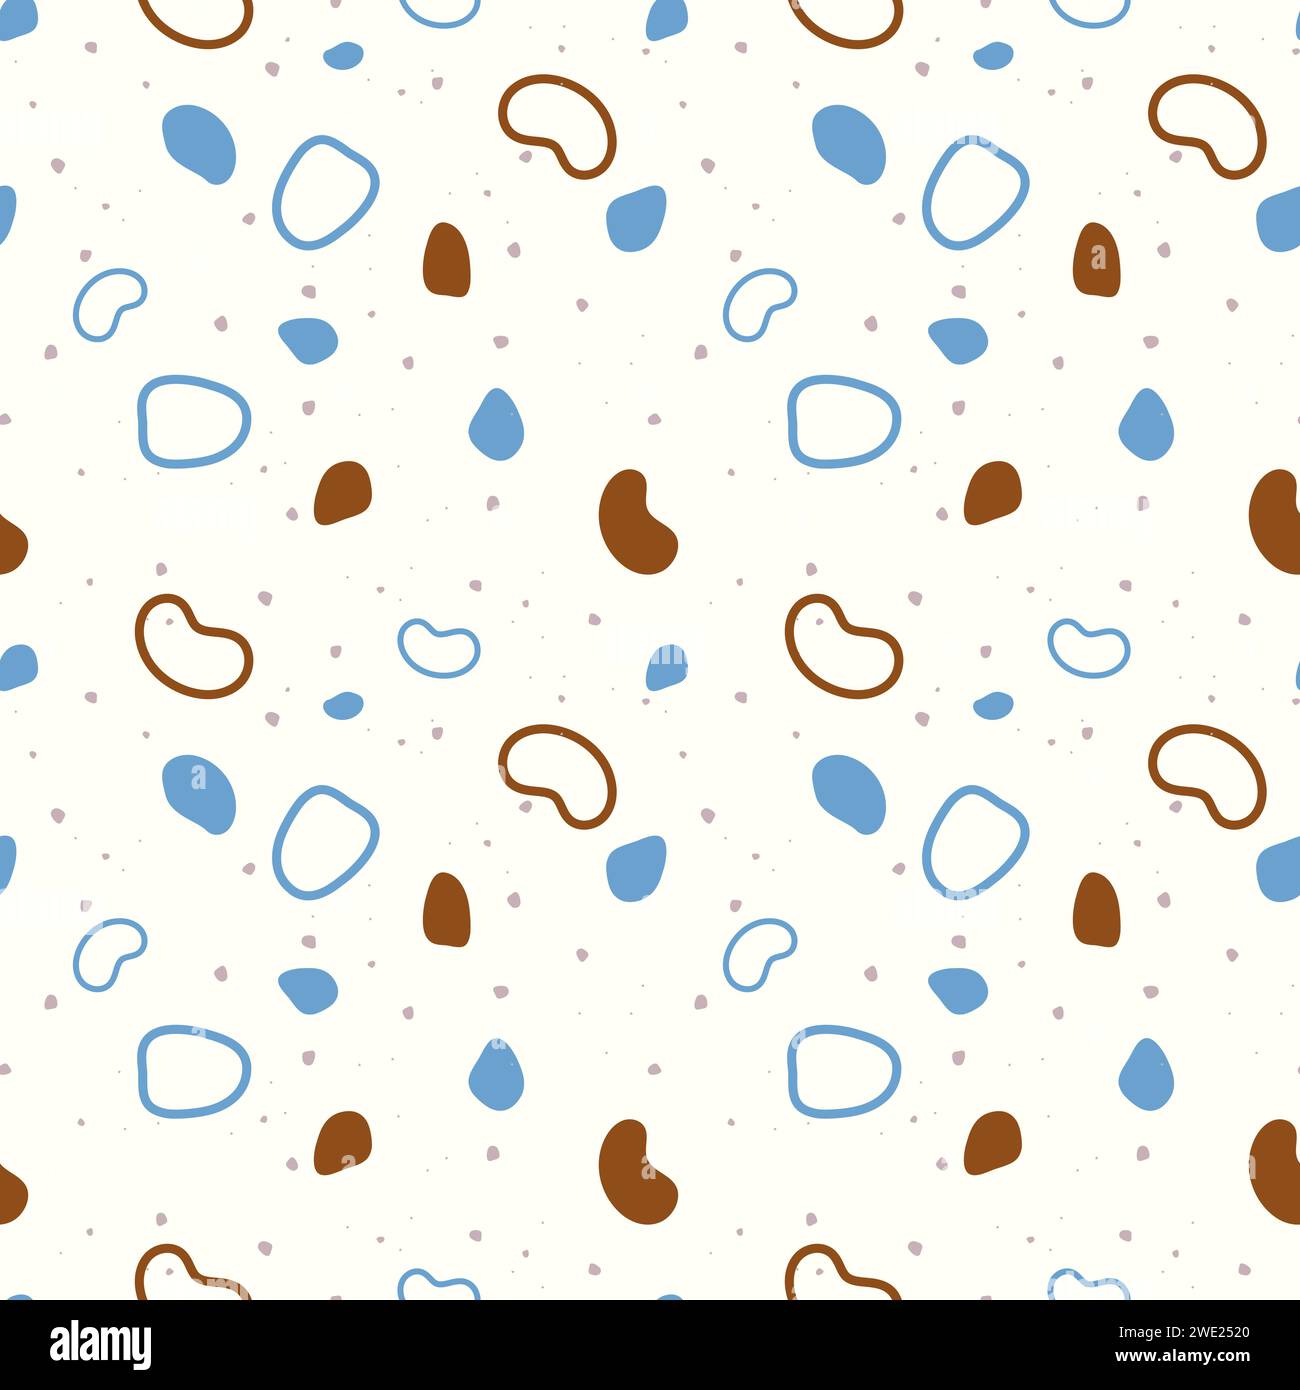 Fondale marino estivo. Pattern con pietre e forme e contorni di piccole dimensioni astratti. Colori marrone e blu. Illustrazione vettoriale Illustrazione Vettoriale